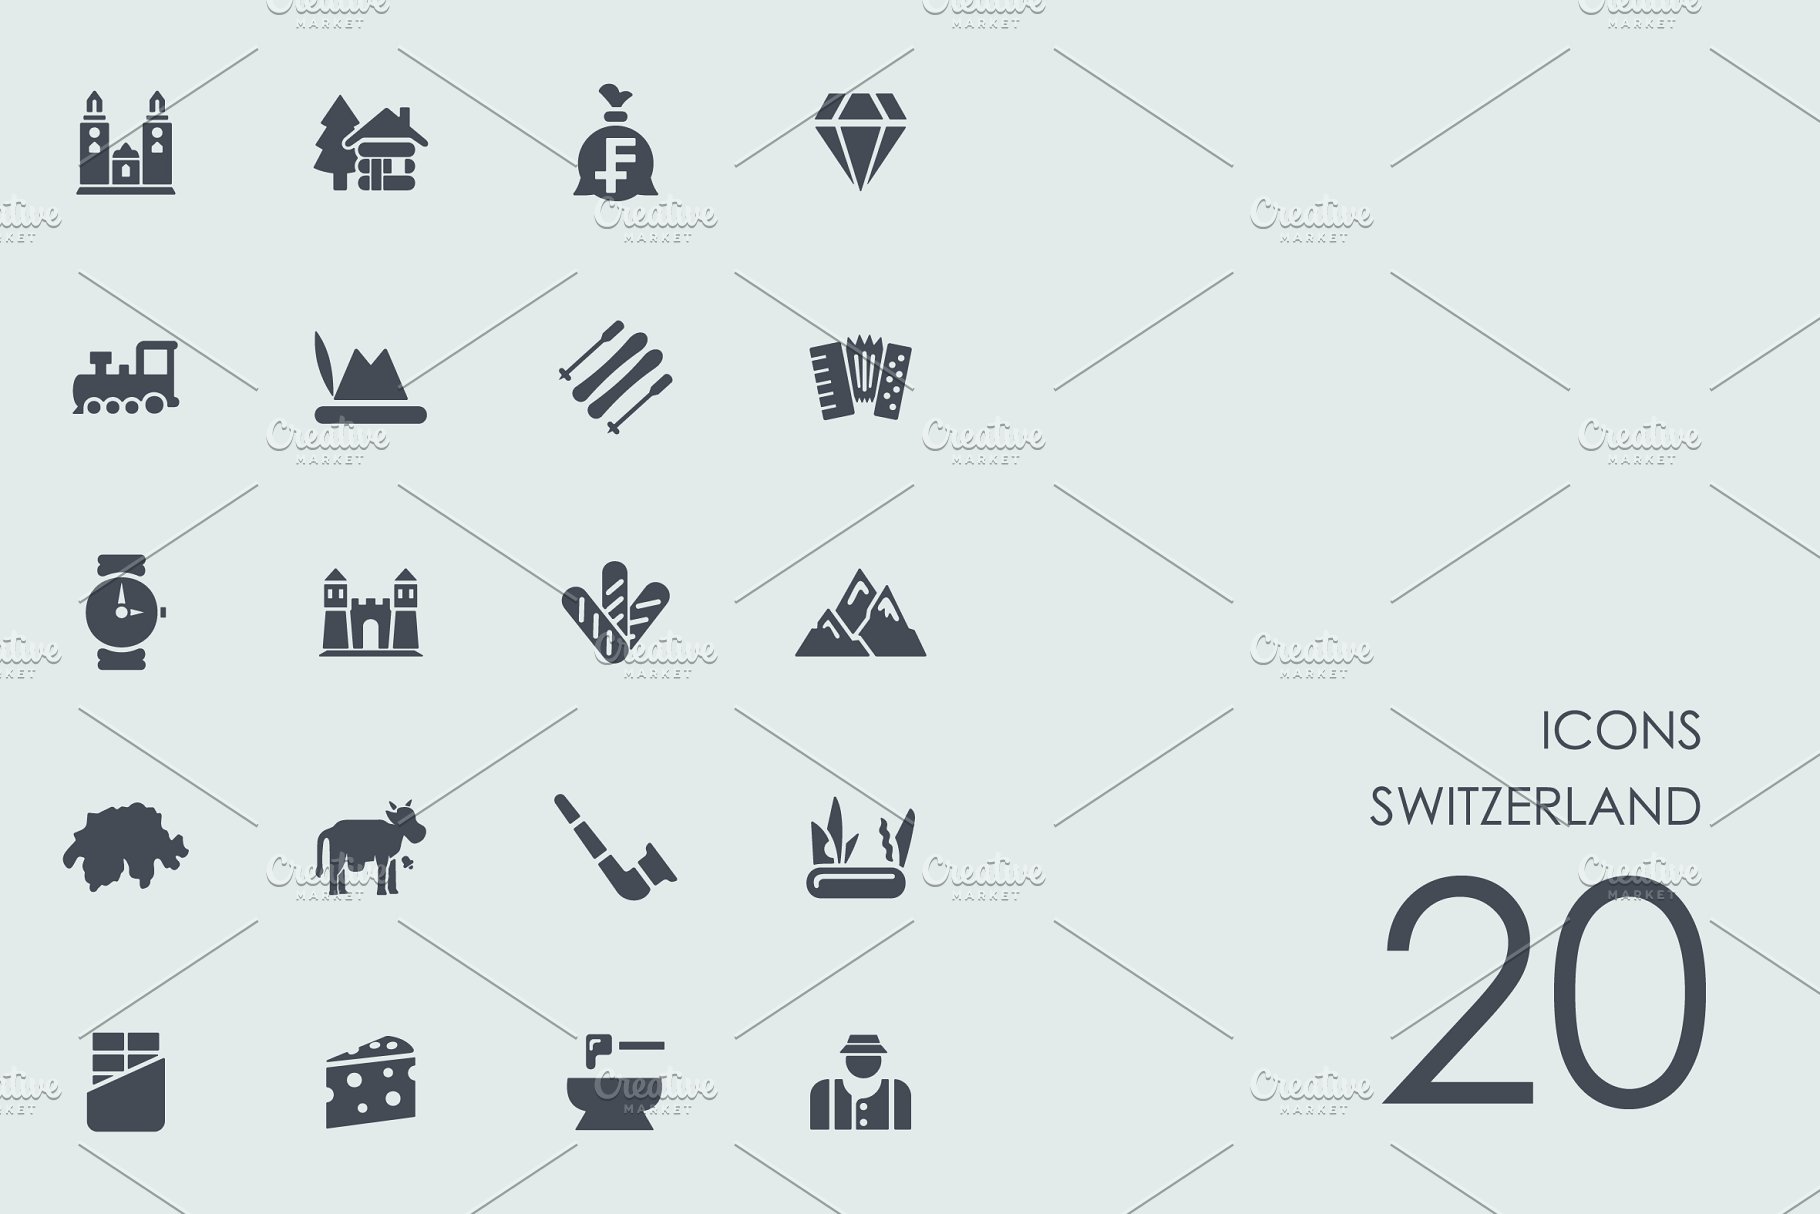 瑞士的图标 Switzerland icons #91557